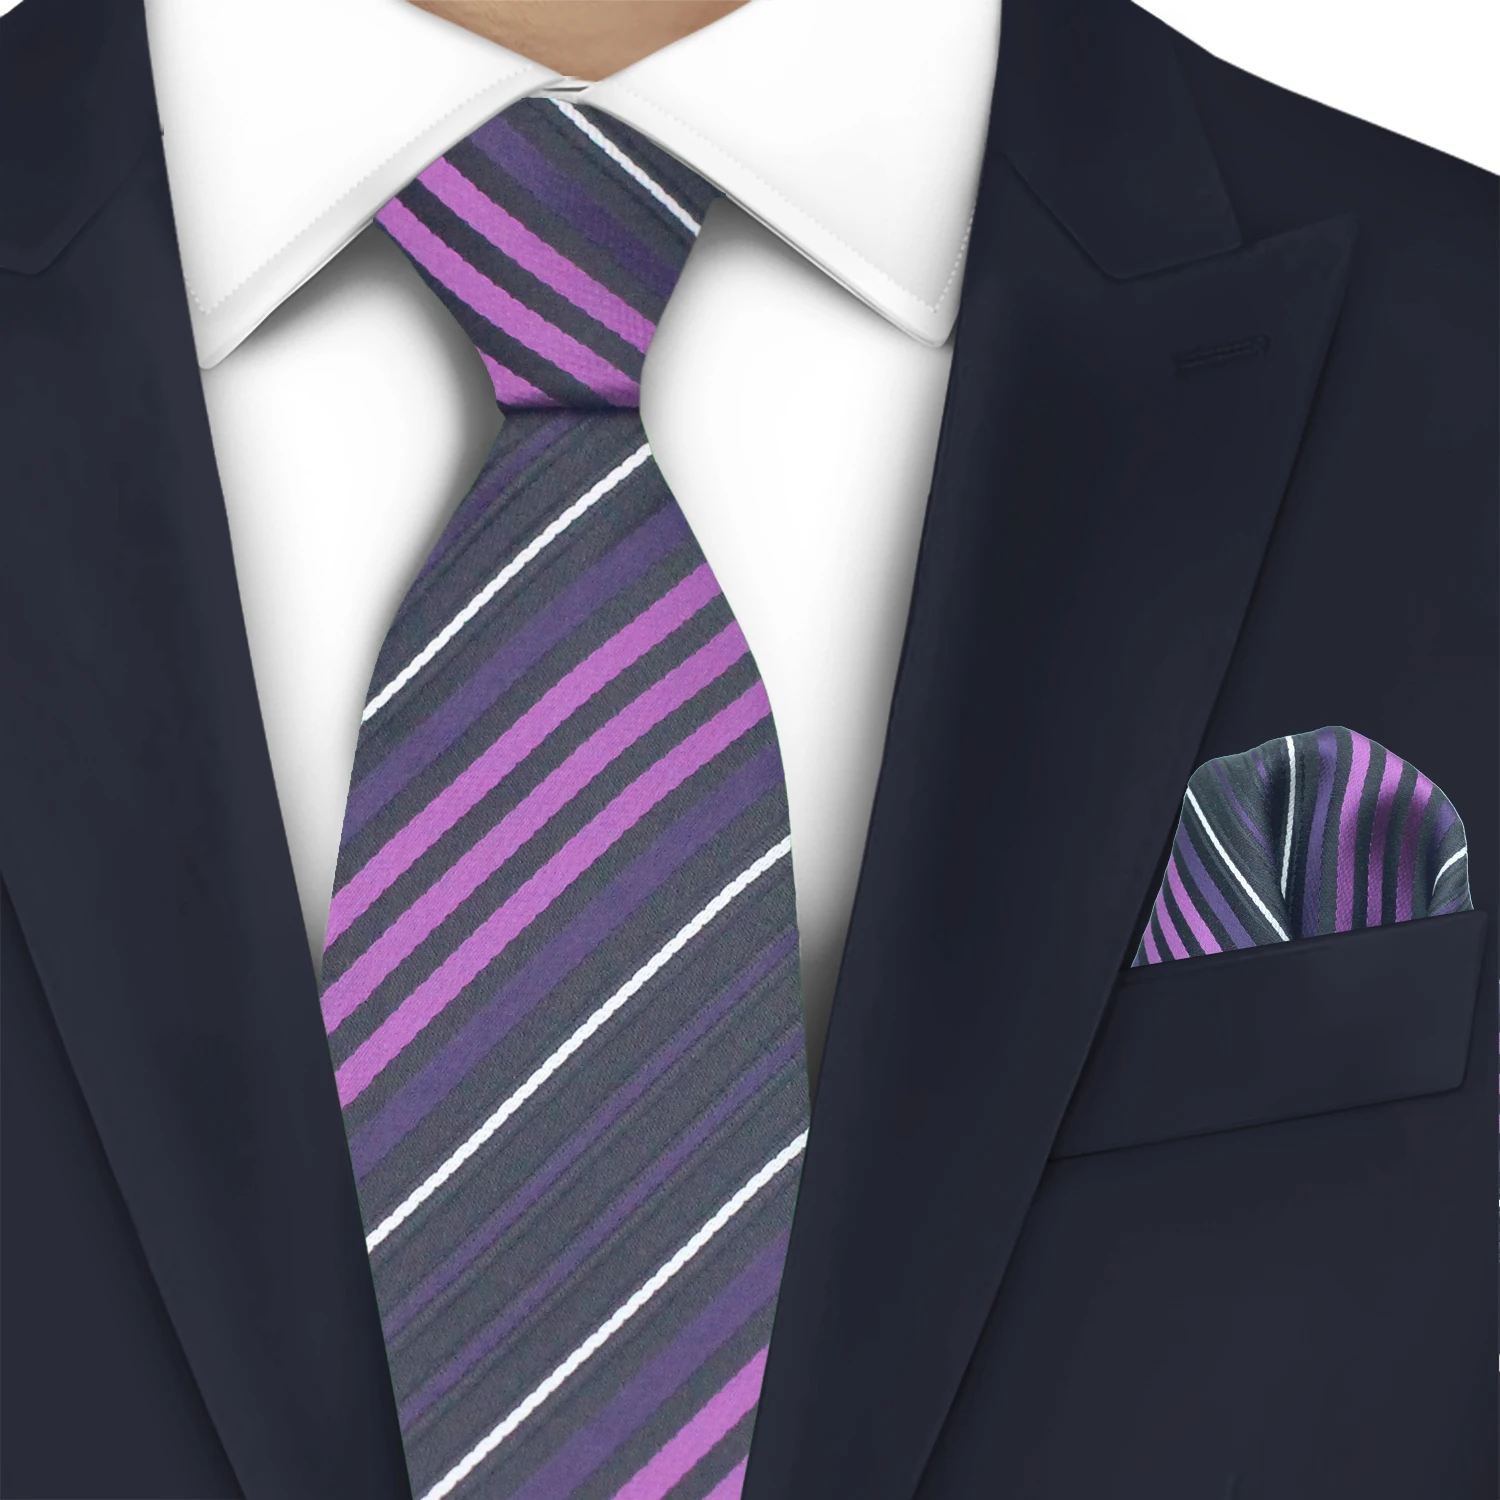 

LYL 5CM Business Fashionable Premium Silk Tie Ensemble Exclusive Purple Stripe Necktie Set With Handkerchief for Upscale Events